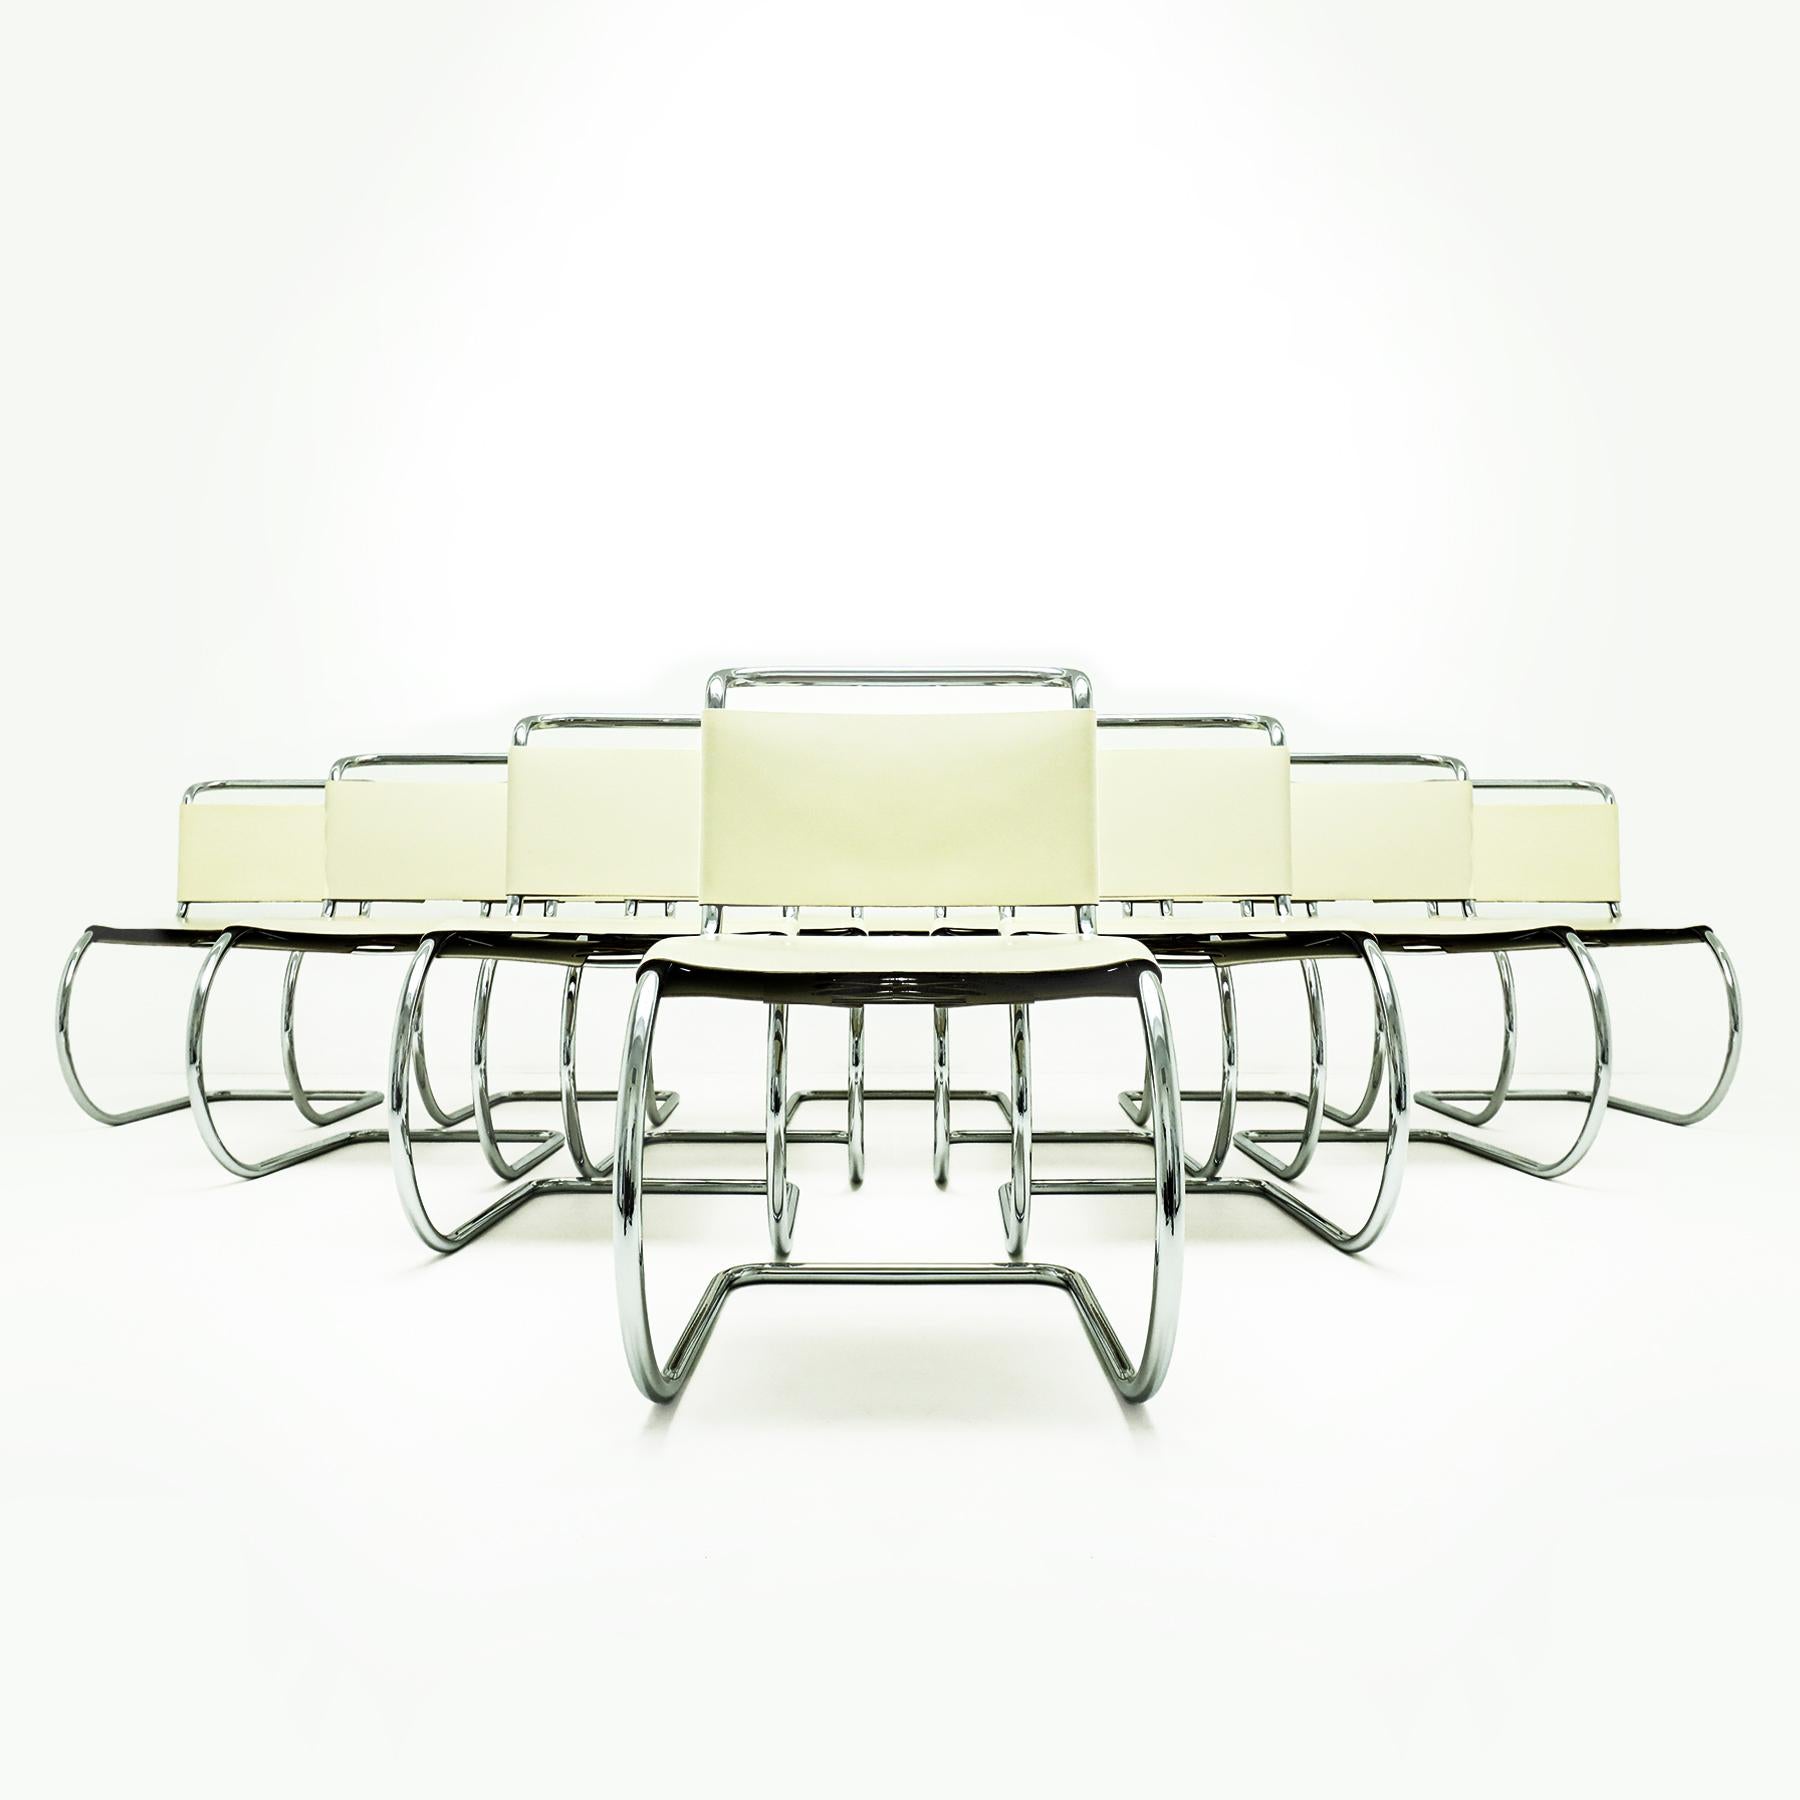 Exceptionnel ensemble de 12 chaises MR10 en cuir crème du Studio Mies van der Rohe, avec dossier et piétement en dentelle et marquage Knoll d'origine. Le prix indiqué est celui du lot de 12. 

Ces chaises sont l'une des toutes premières chaises